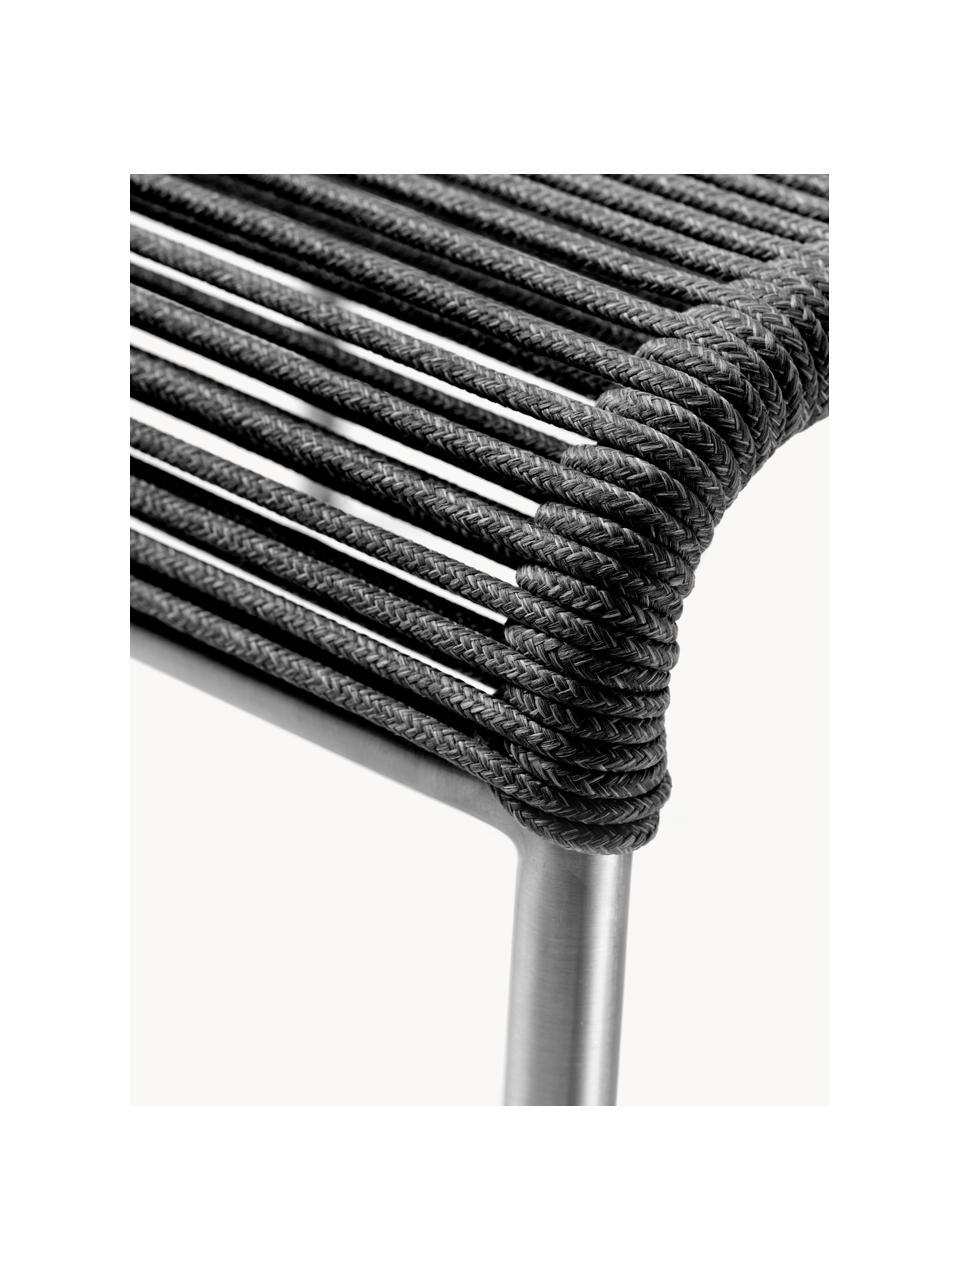 Fusshocker Teglgård, Sitzfläche: Schnur, Gestell: Metall, beschichtet, Schwarz, Silberfarben, B 50 x H 36 cm